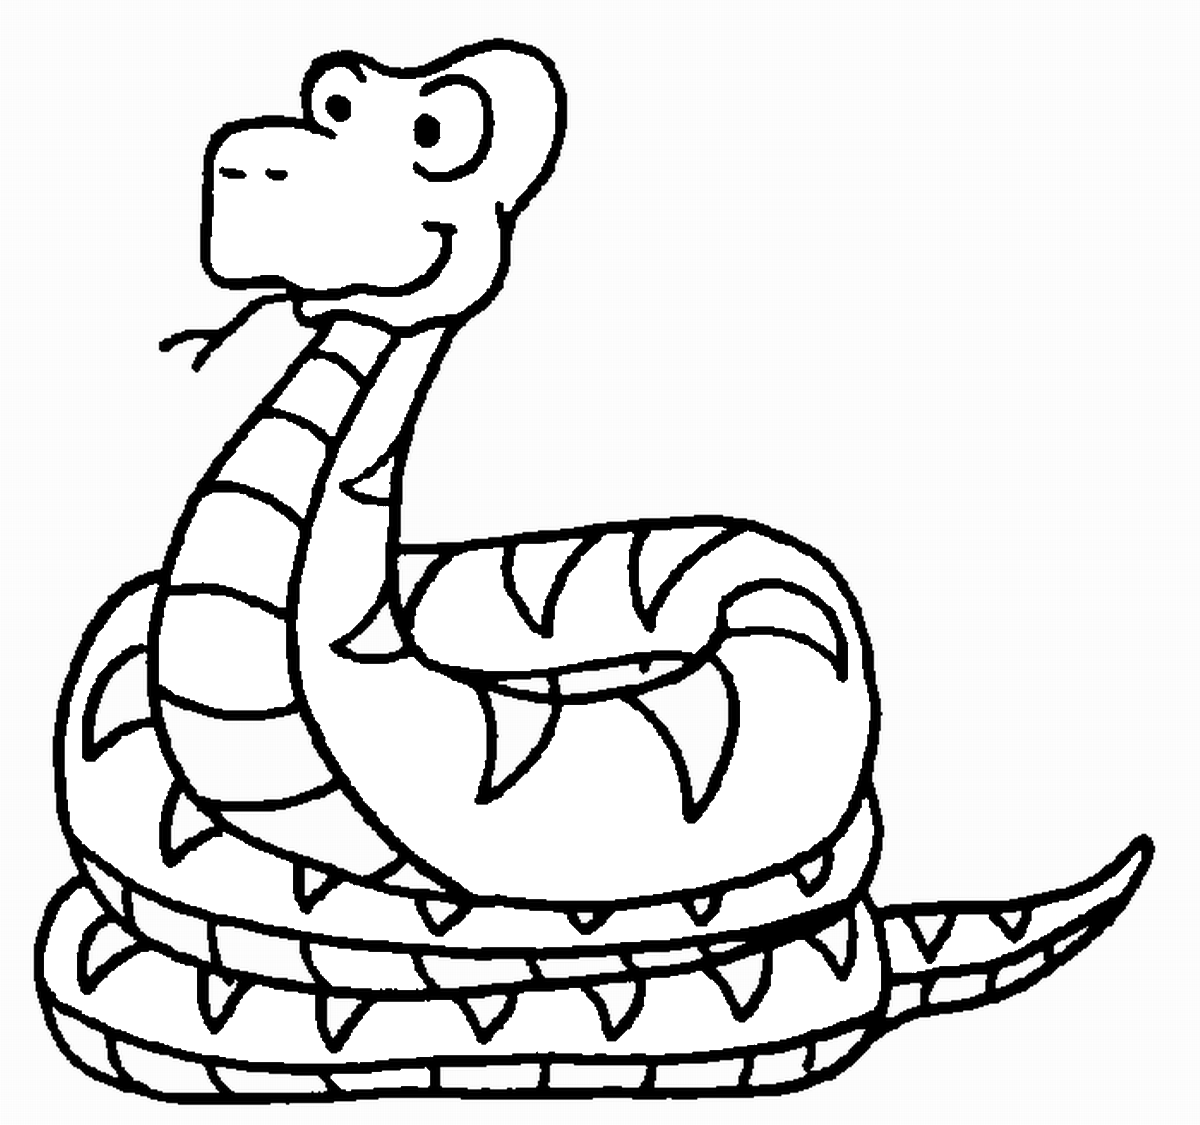 Змея раскраска. Змея раскраска для детей. Раскраска змеи для детей. Змея картинка раскраска.